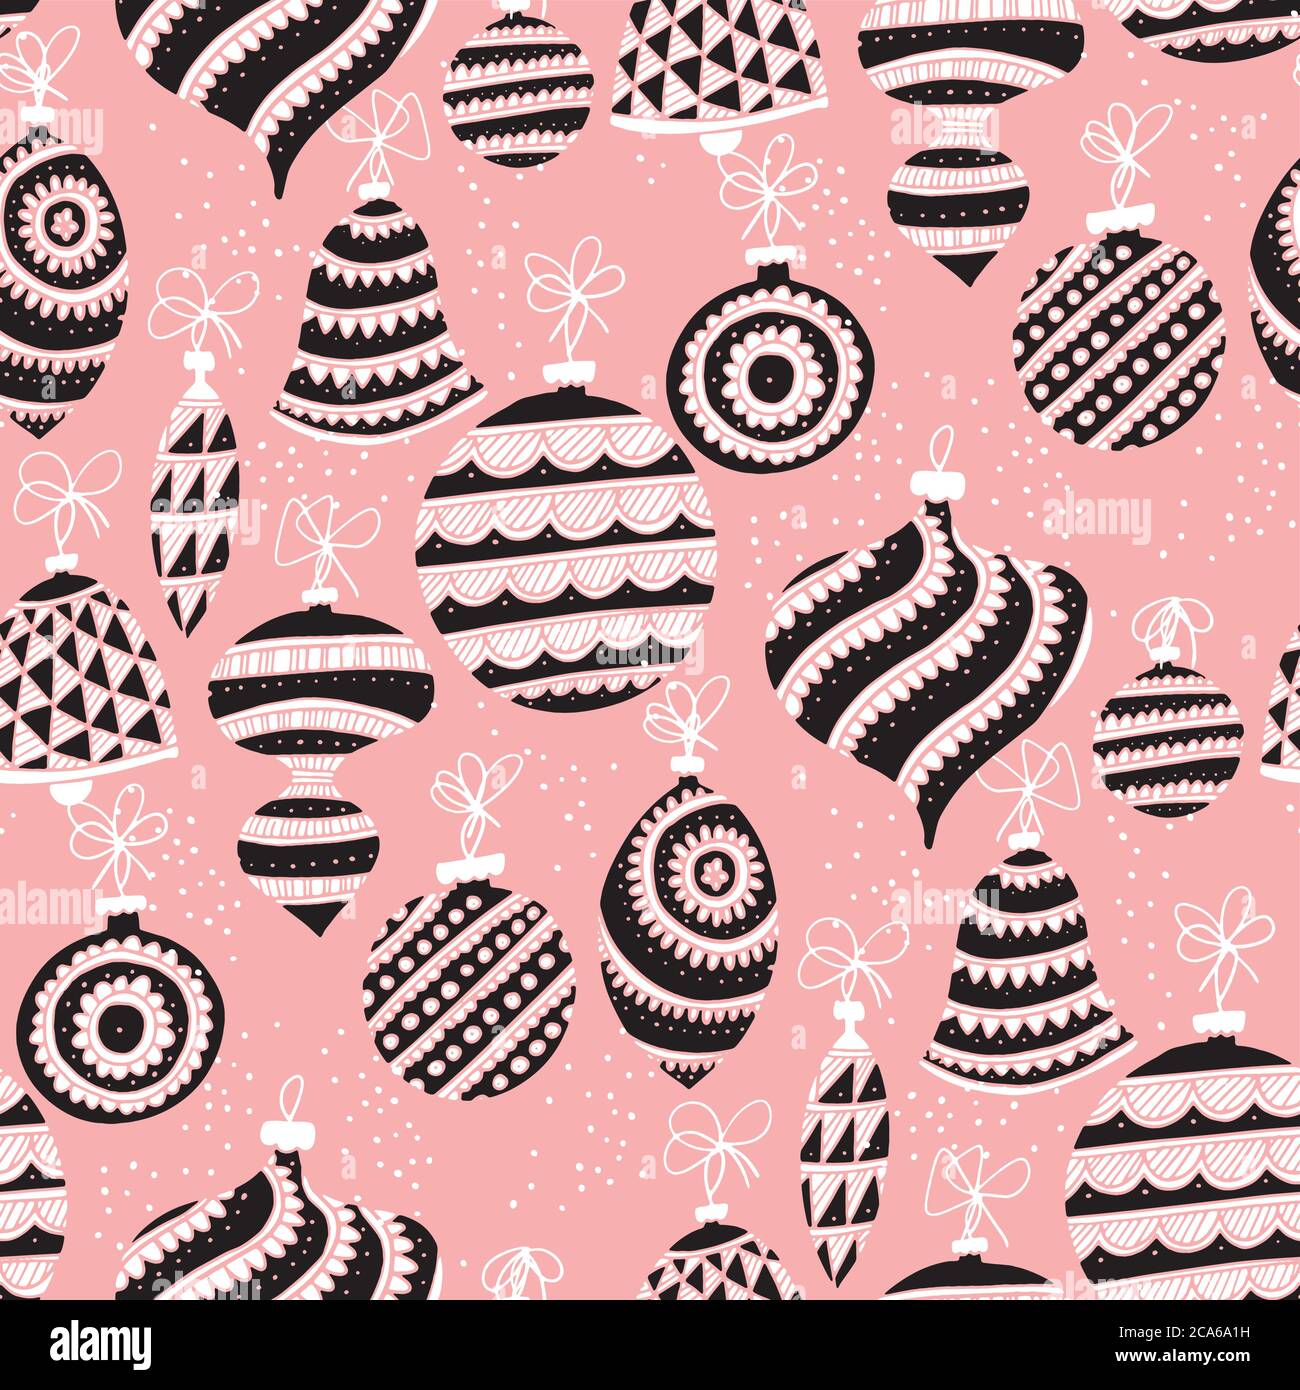 Cute Folk-Stil rosig und schwarz Weihnachtskugeln nahtlose Muster für Hintergrund, Stoff, Textil, Wrap, Oberfläche, Web-und Print-Design. Weihnachtskugeln han Stock Vektor